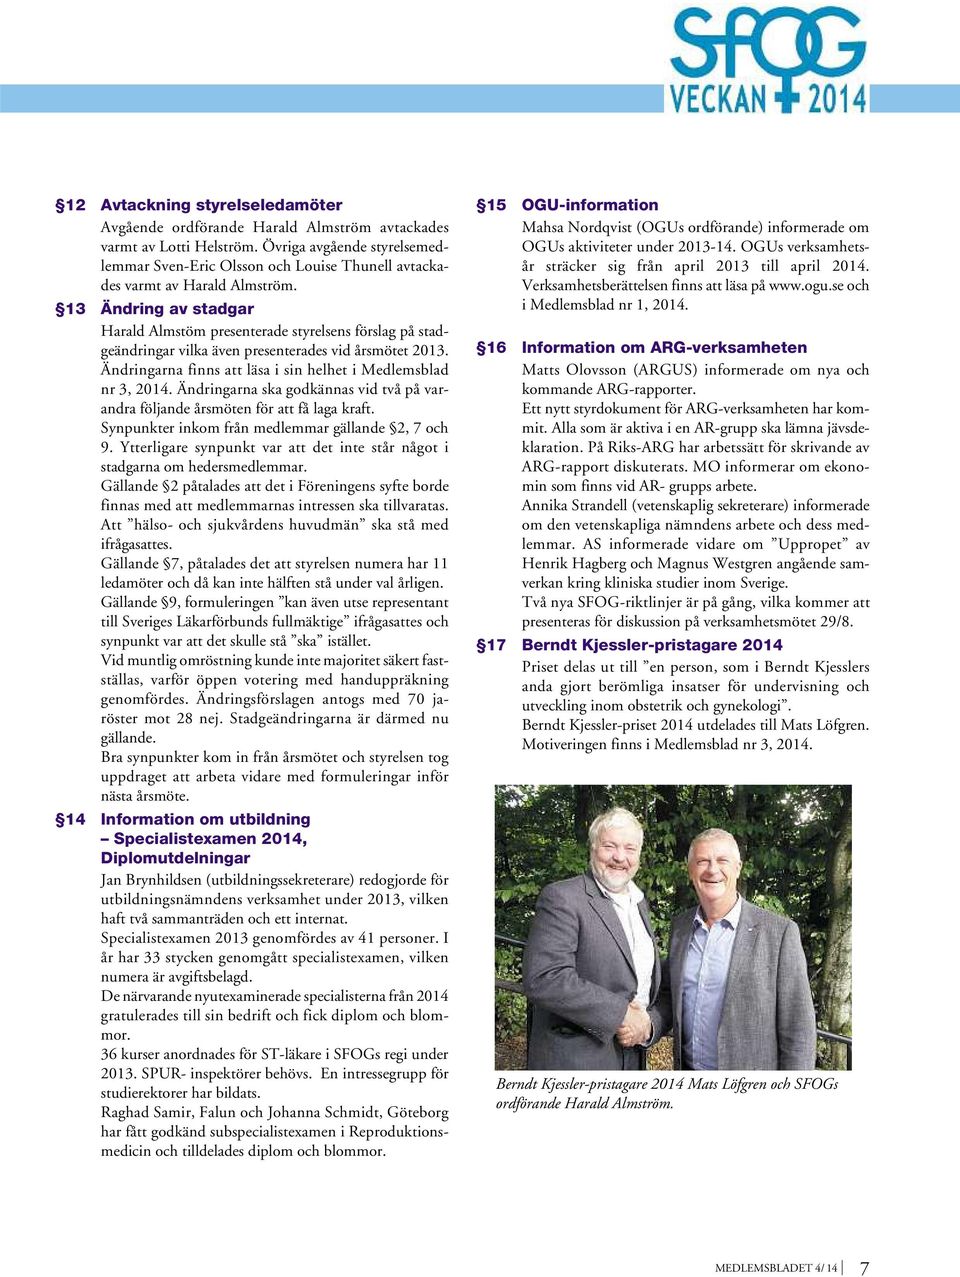 13 Ändring av stadgar Harald Almstöm presenterade styrelsens förslag på stadgeändringar vilka även presenterades vid årsmötet 2013. Ändringarna finns att läsa i sin helhet i Medlemsblad nr 3, 2014.